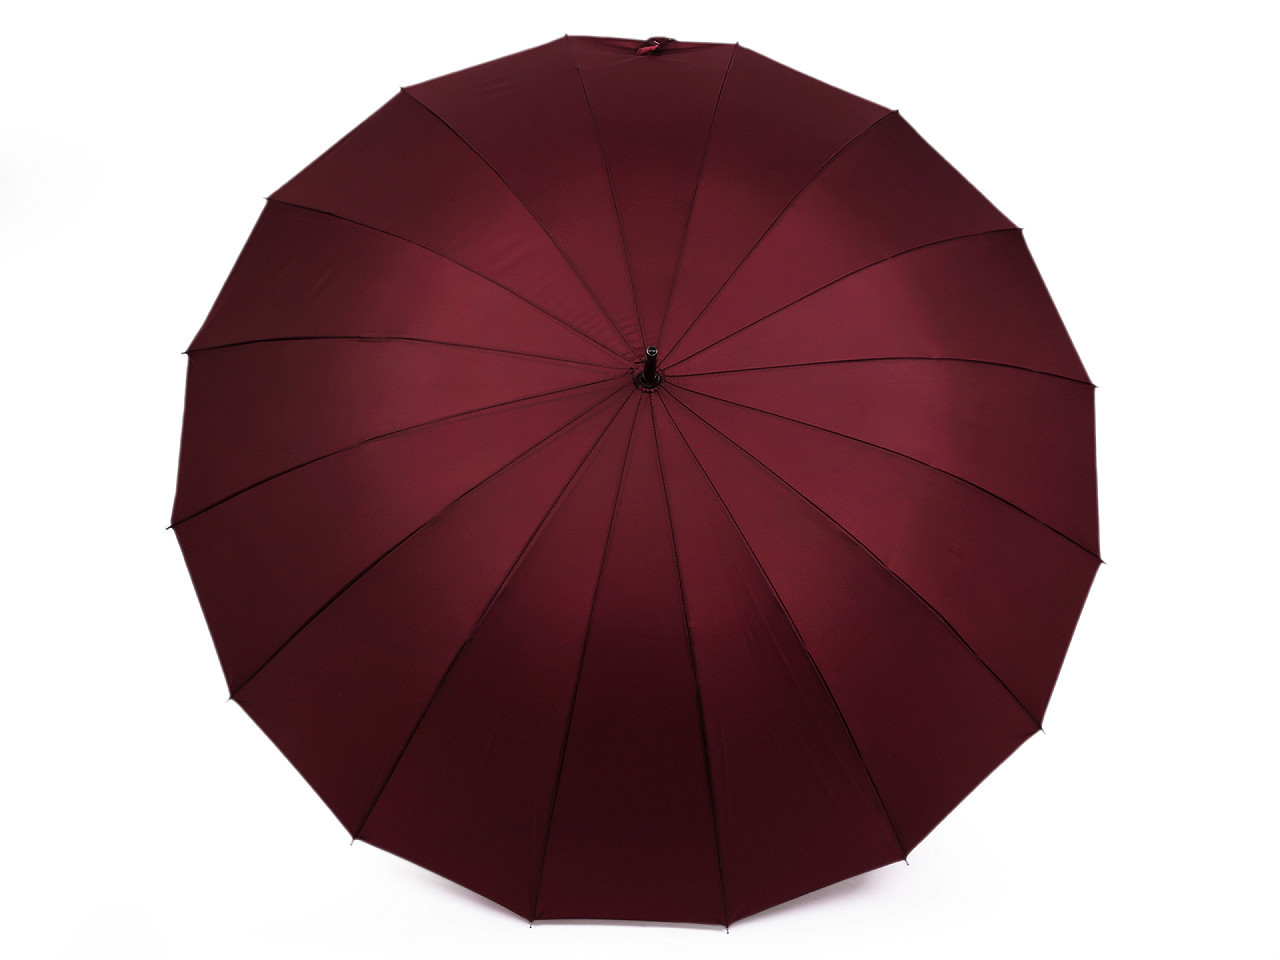 Velký rodinný deštník s dřevěnou rukojetí, barva 1 vínová